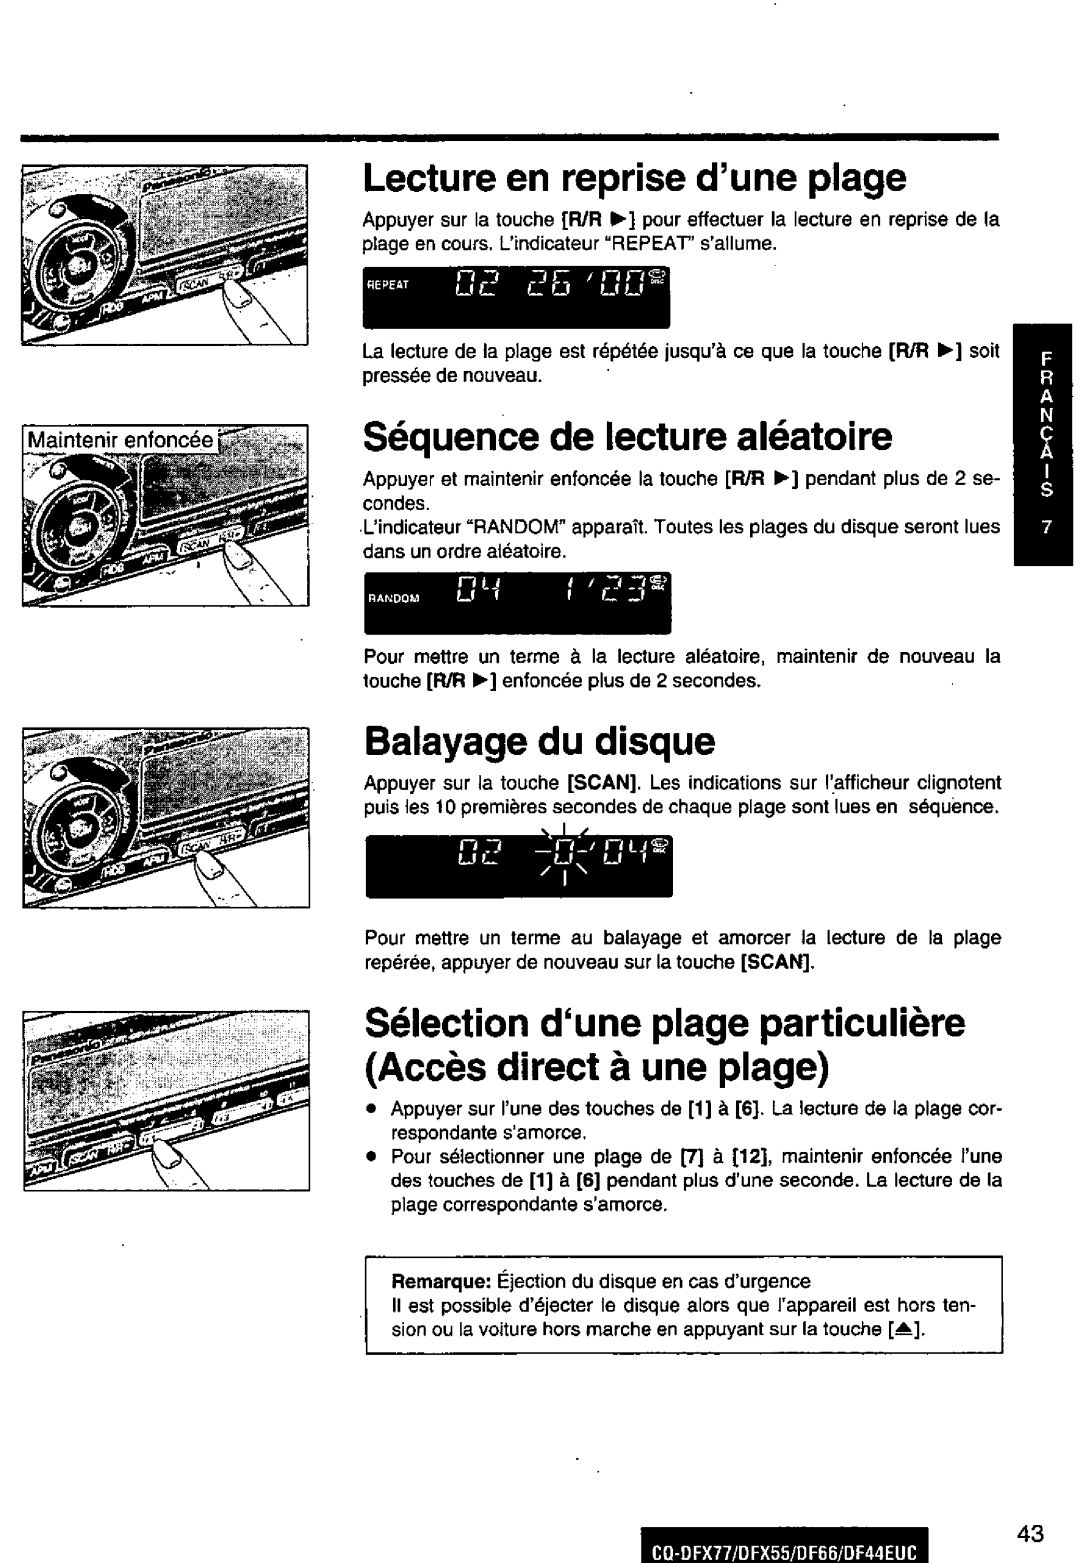 Panasonic CQ-DFX55, CQ-DFX77, DF66EUC, DF44EUC manual 